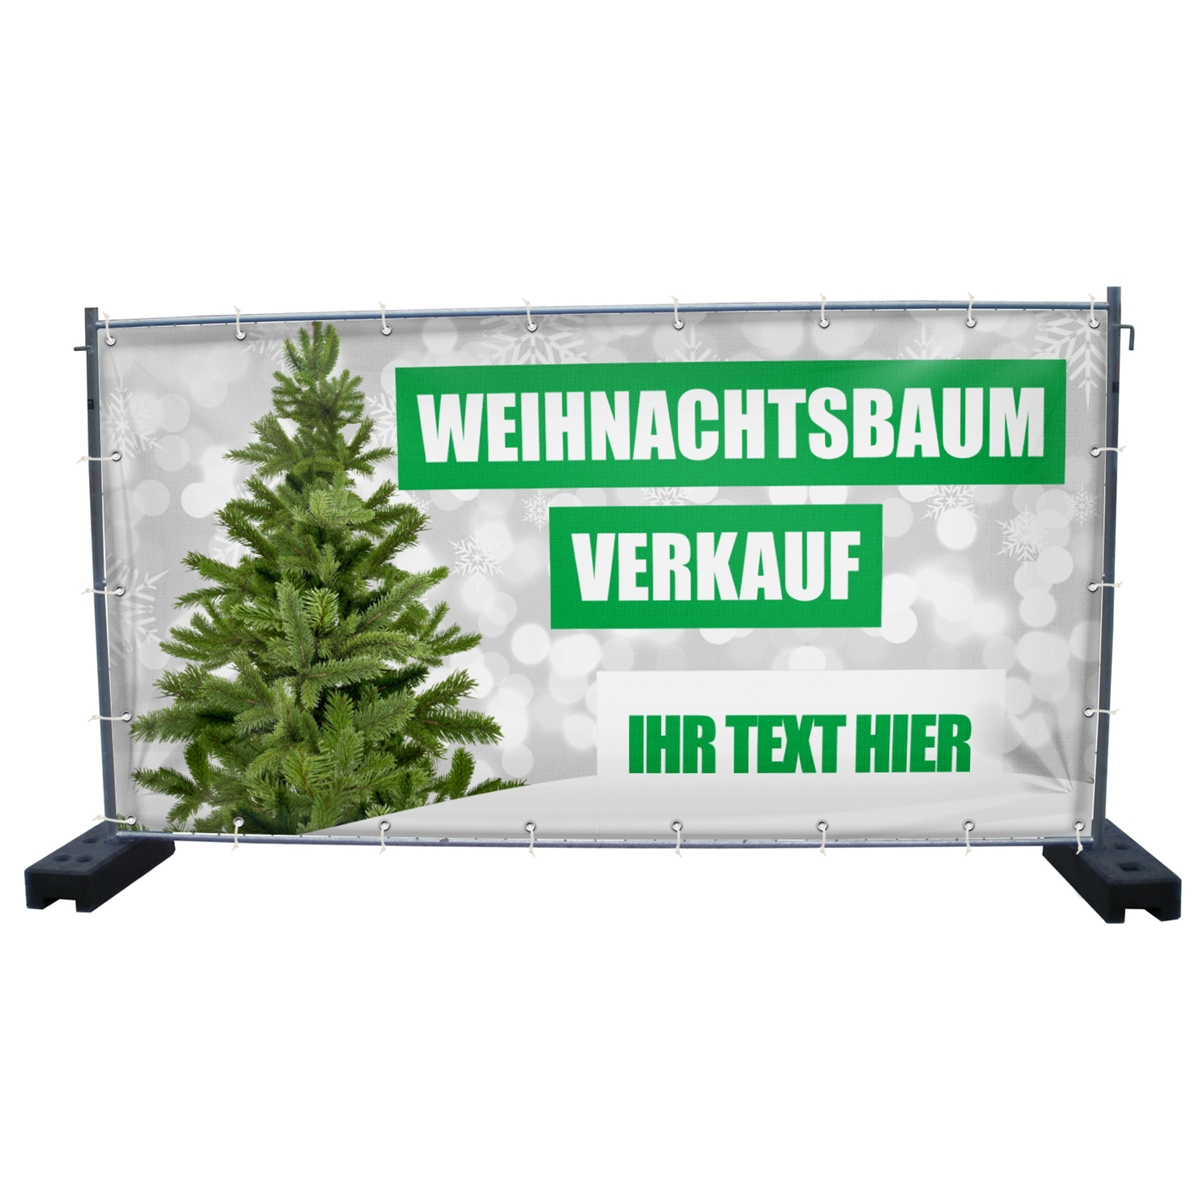 340 x 173 cm | Weihnachtsbaumverkauf Bauzaunbanner (2141)